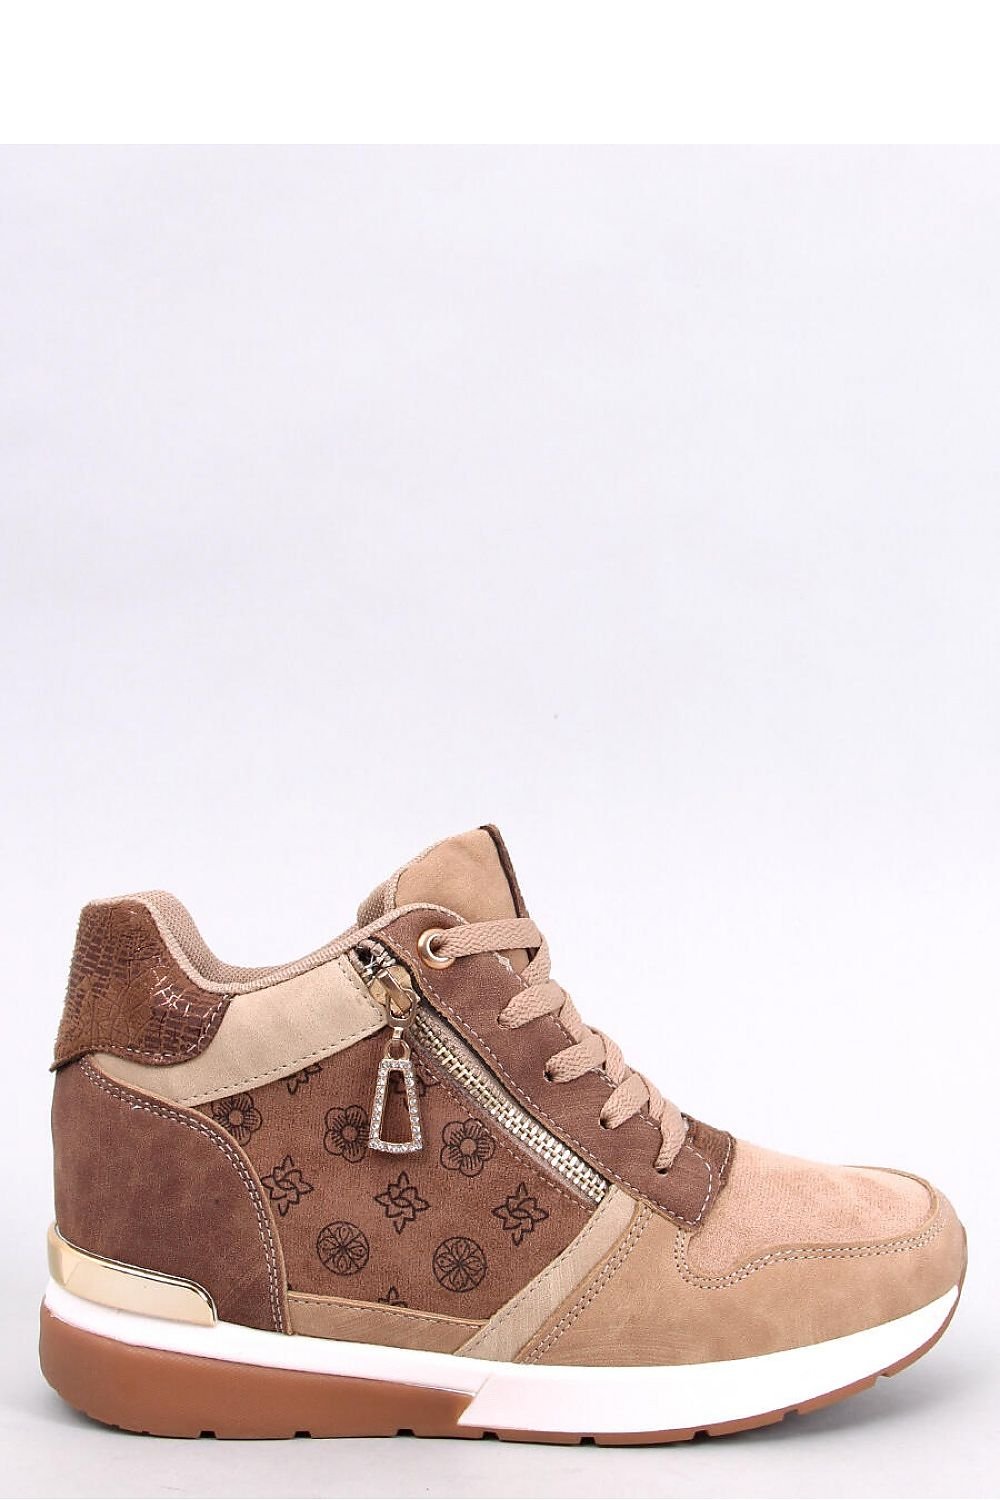 Brown Wedge heel sneakers